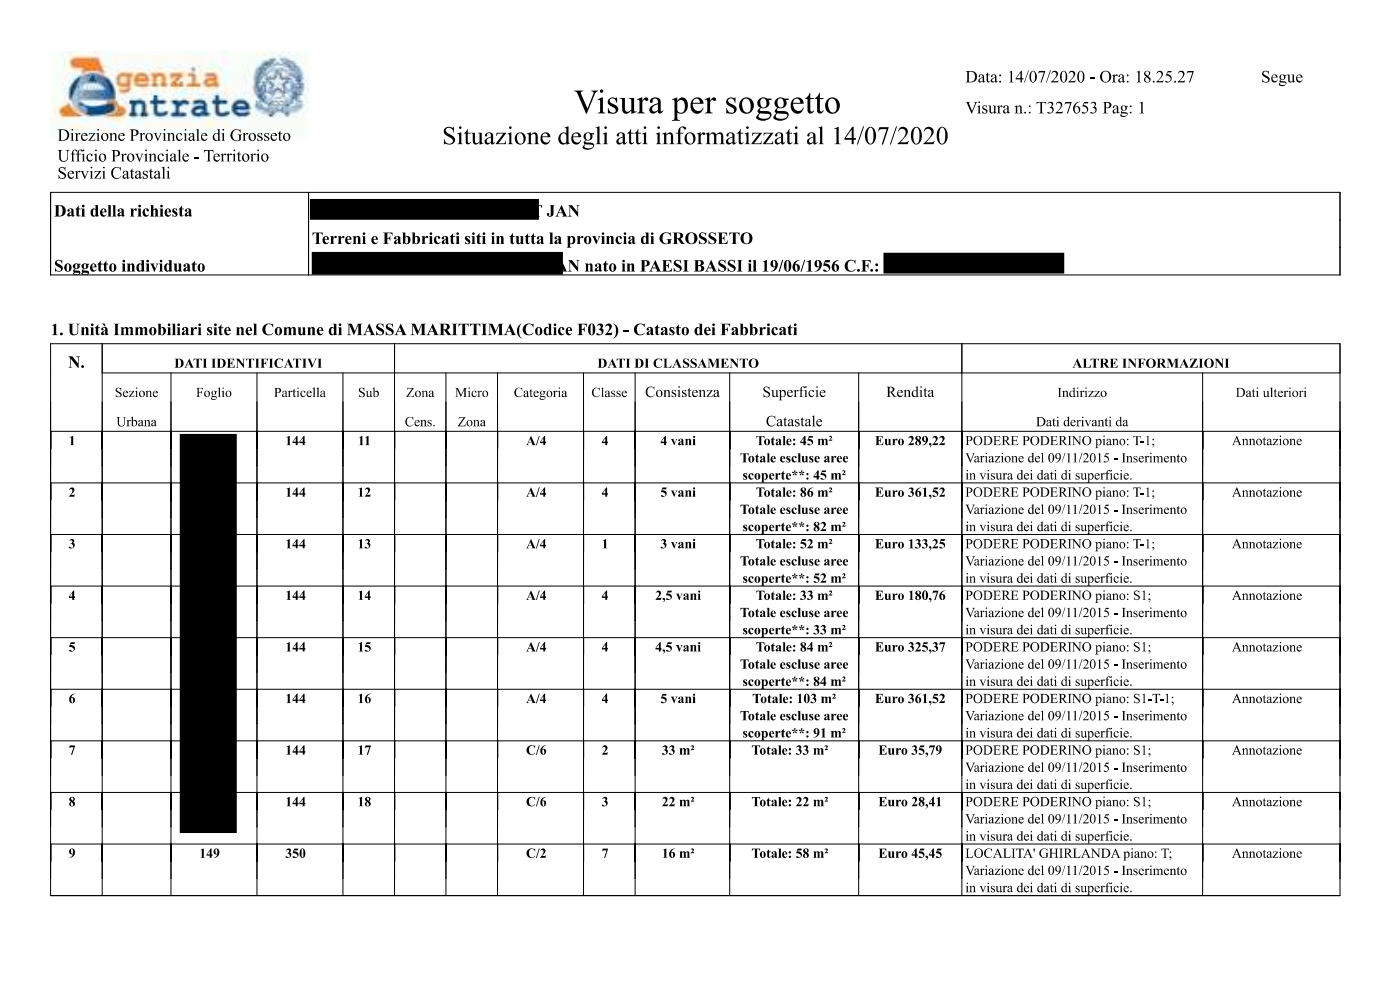 Выписка по физическому лицу из реестра недвижимости Италии